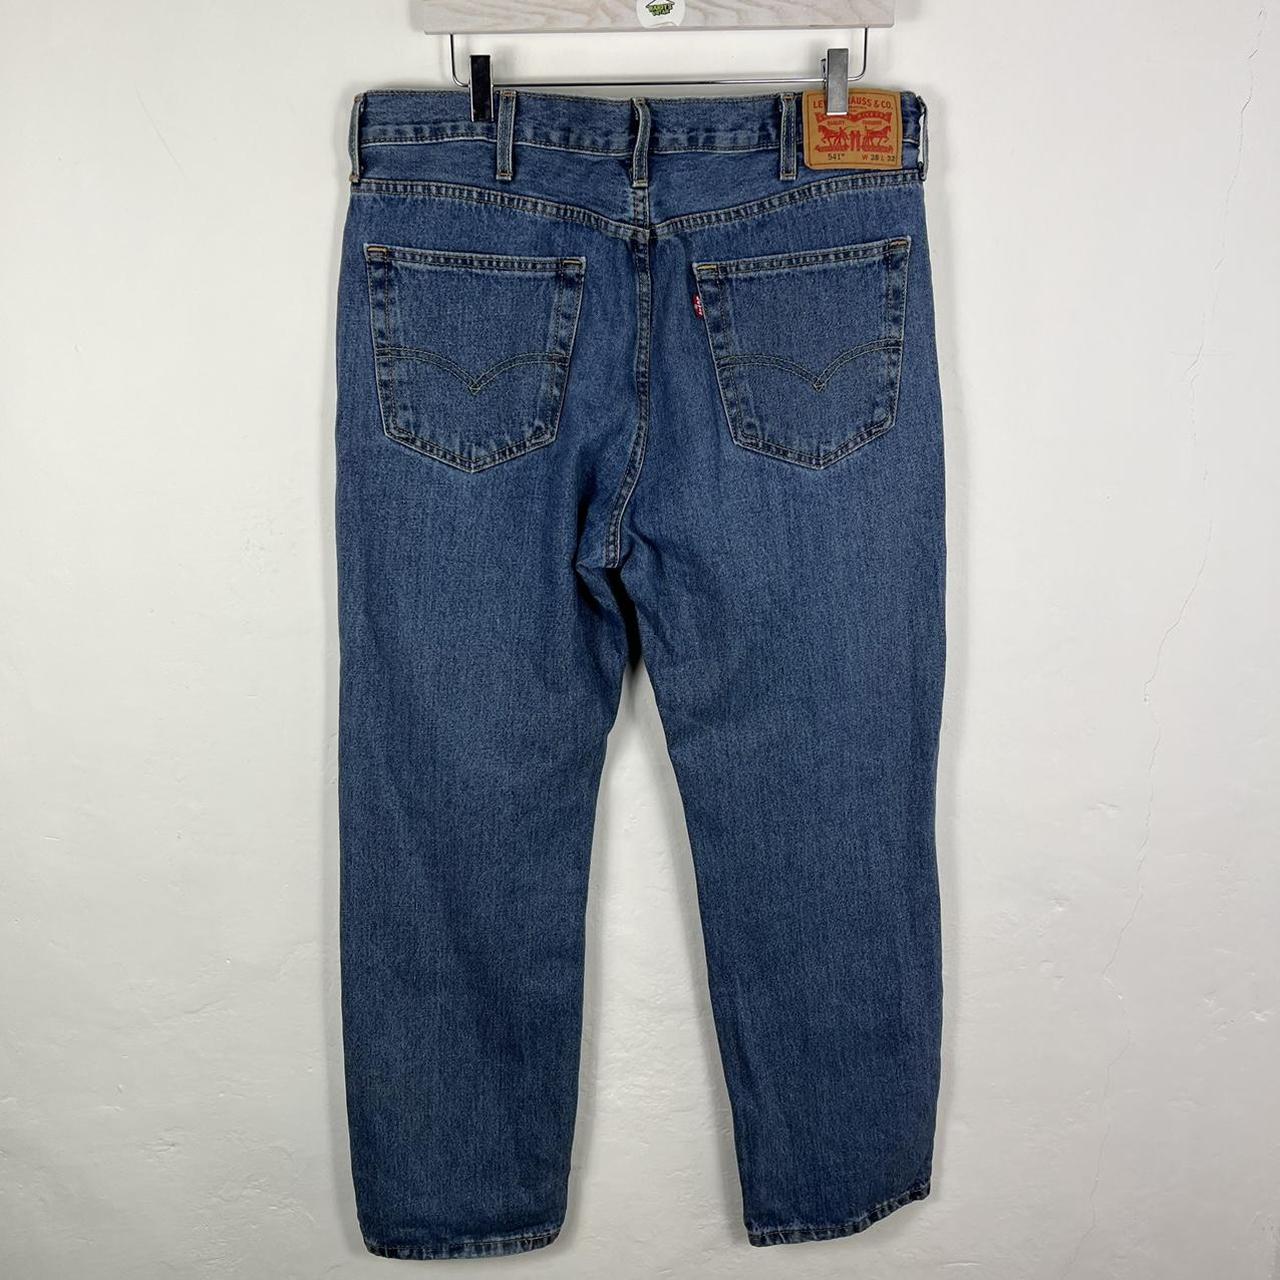 Levis 541 jeans 38x32